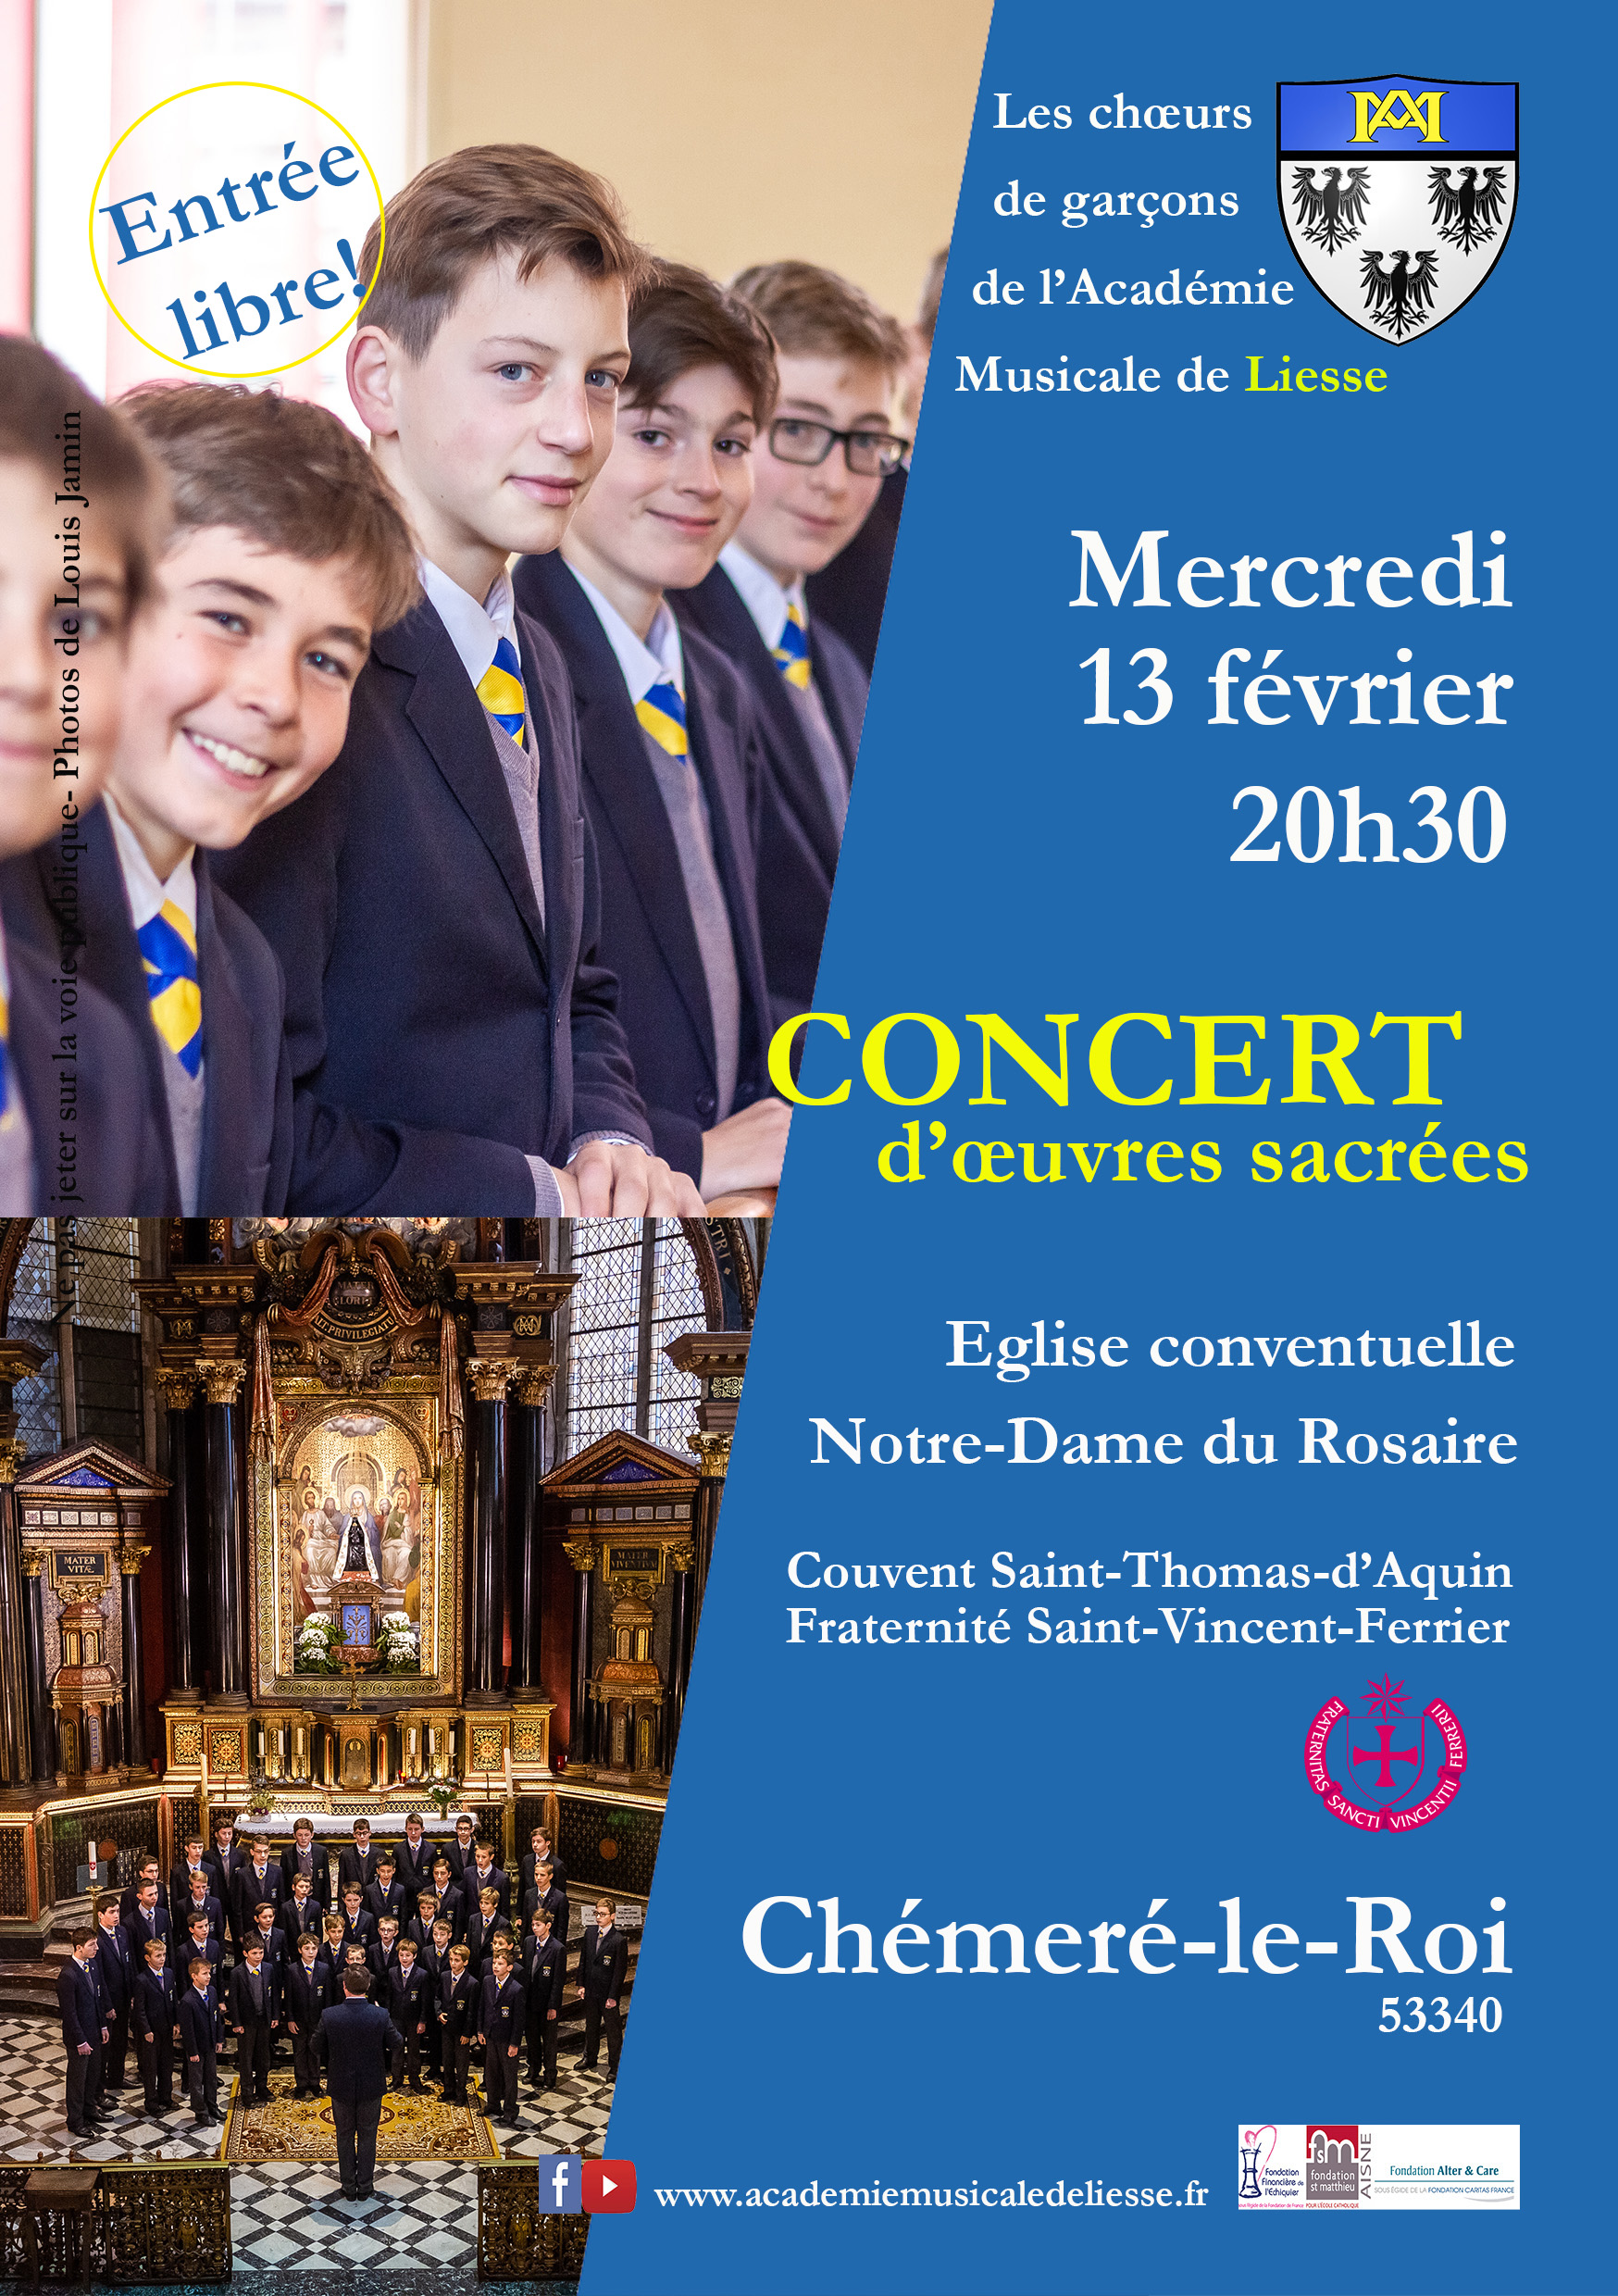 Concert de l’Académie Musicale de Liesse à Chémeré le Roi (53) le 13 février 2019